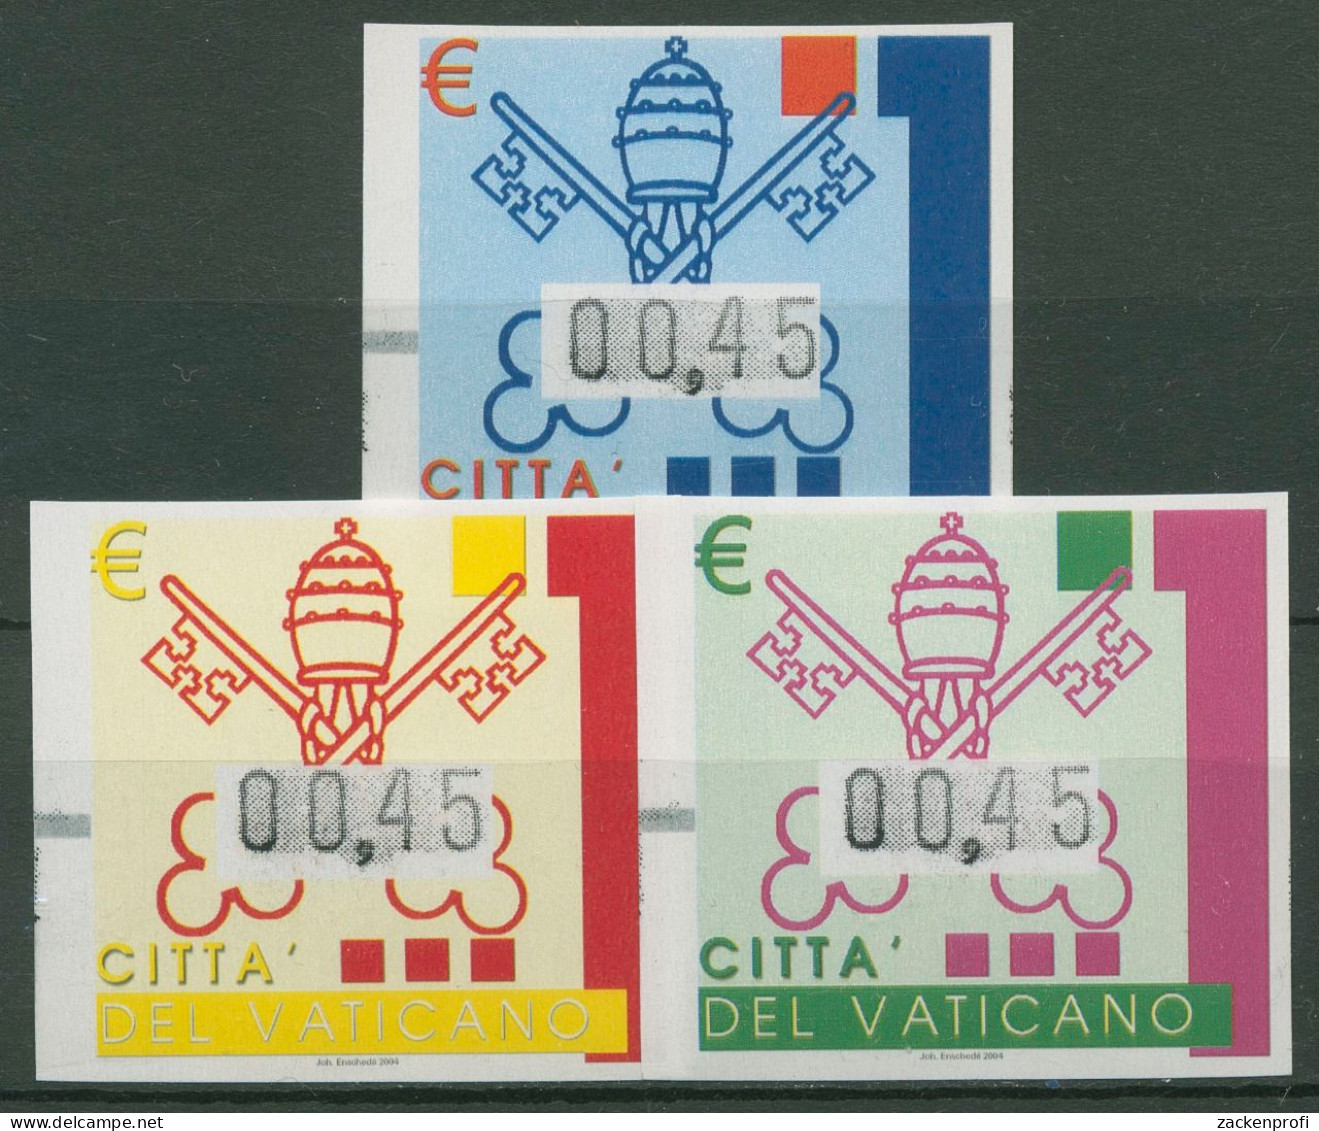 Vatikan 2004 Automatenmarken Wappen ATM 15/17 Postfrisch - Nuevos